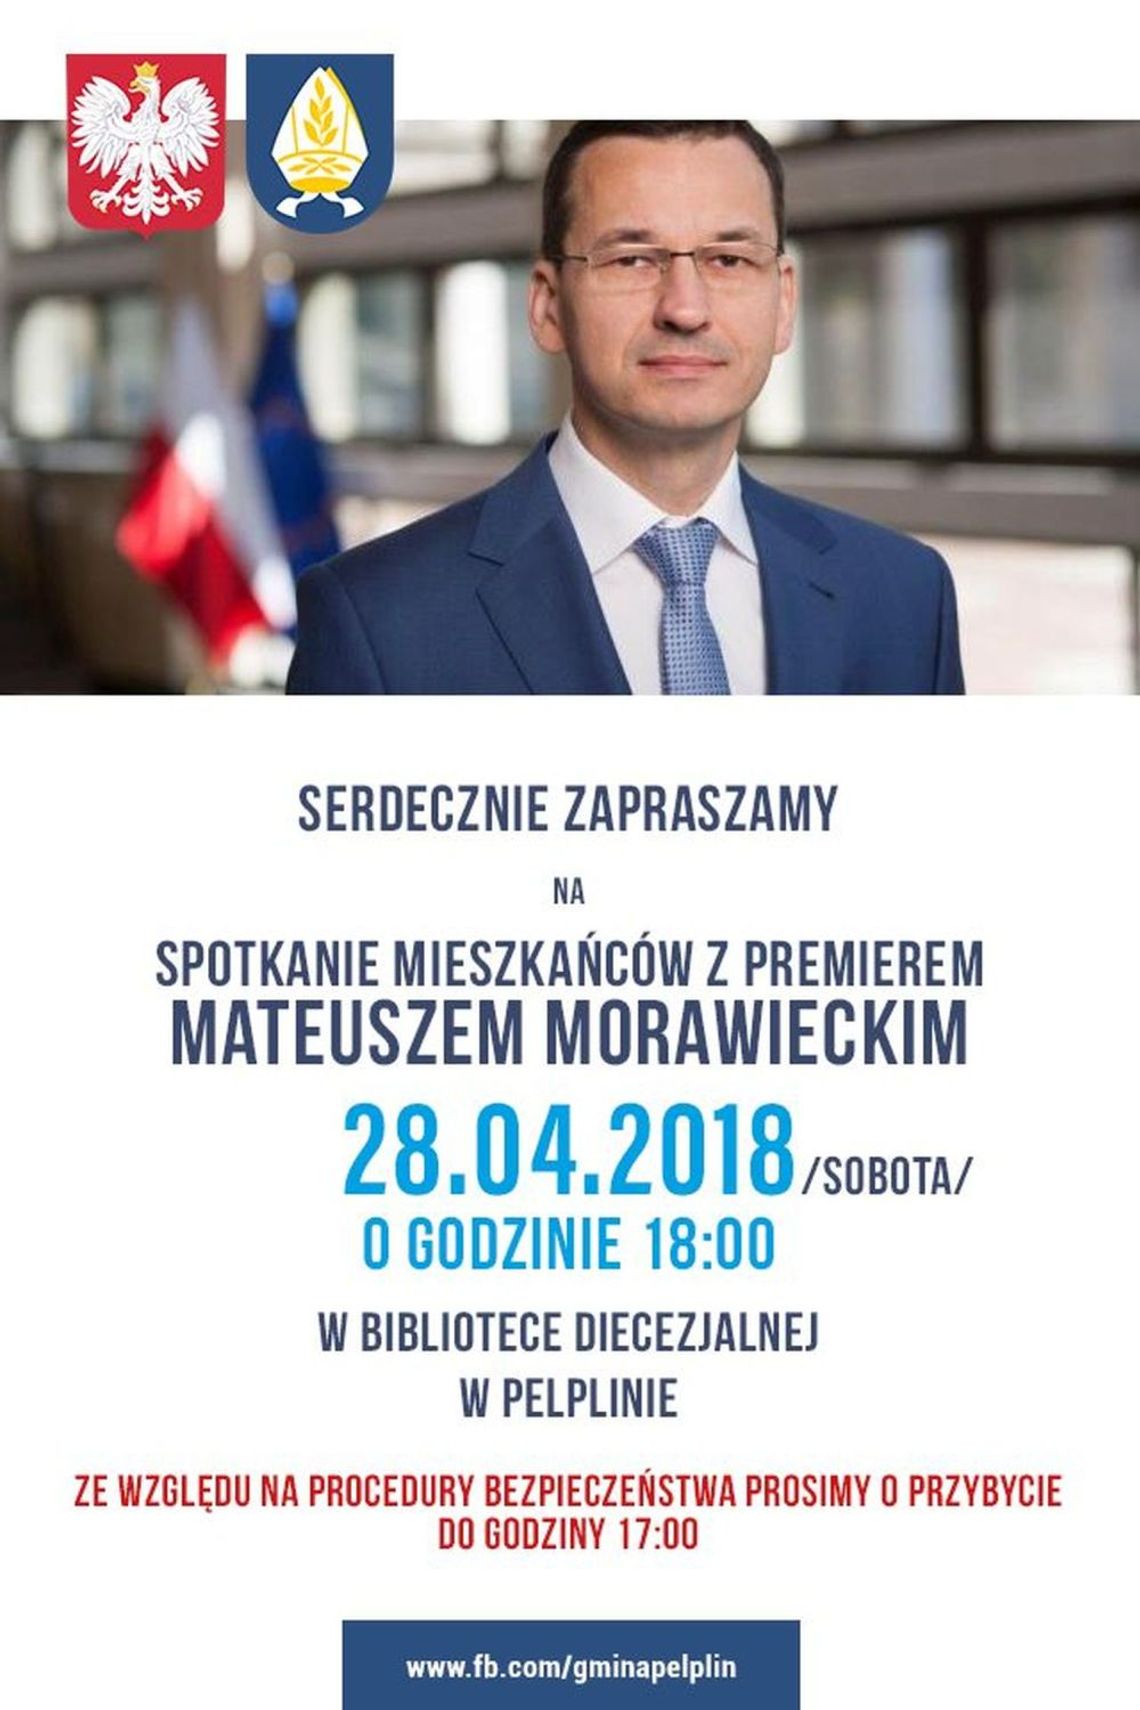 PILNE. Premier Morawiecki przyjedzie do Pelplina. W sobotę spotkanie z mieszkańcami